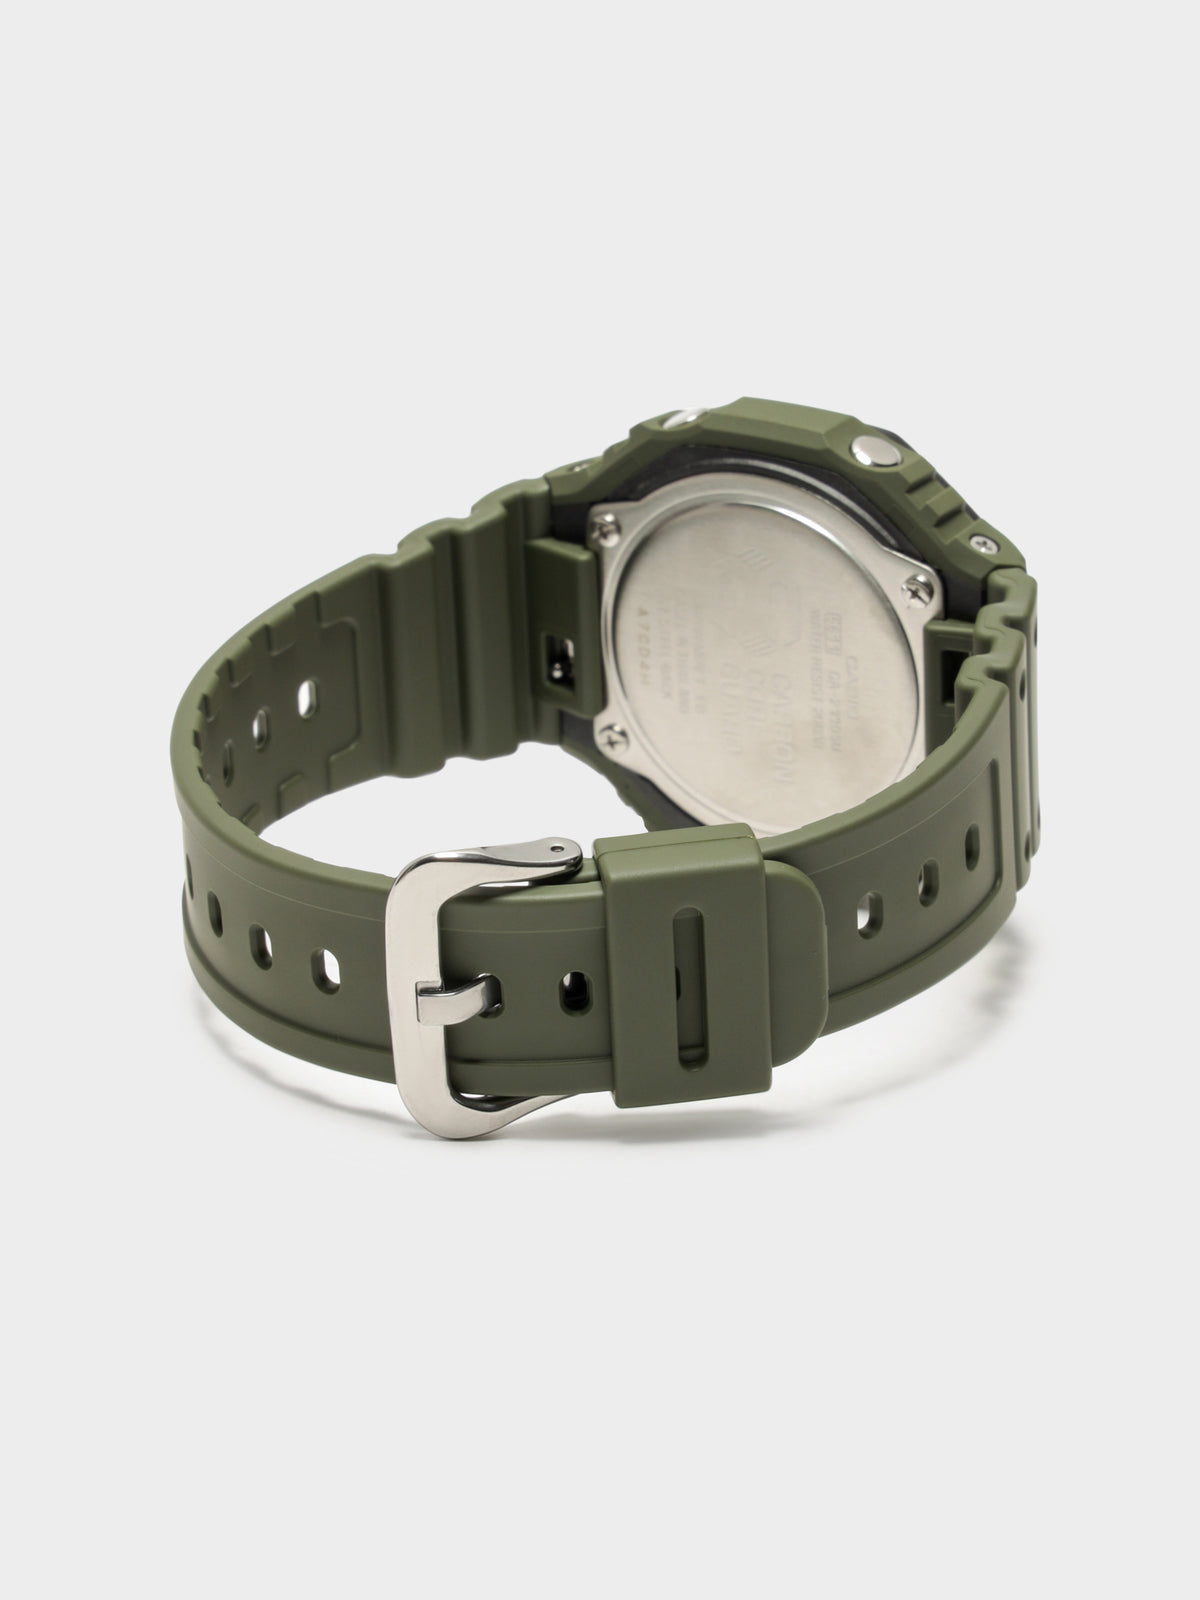 Duo Street Utility GA2110SU3A Digital Watch in Army Green